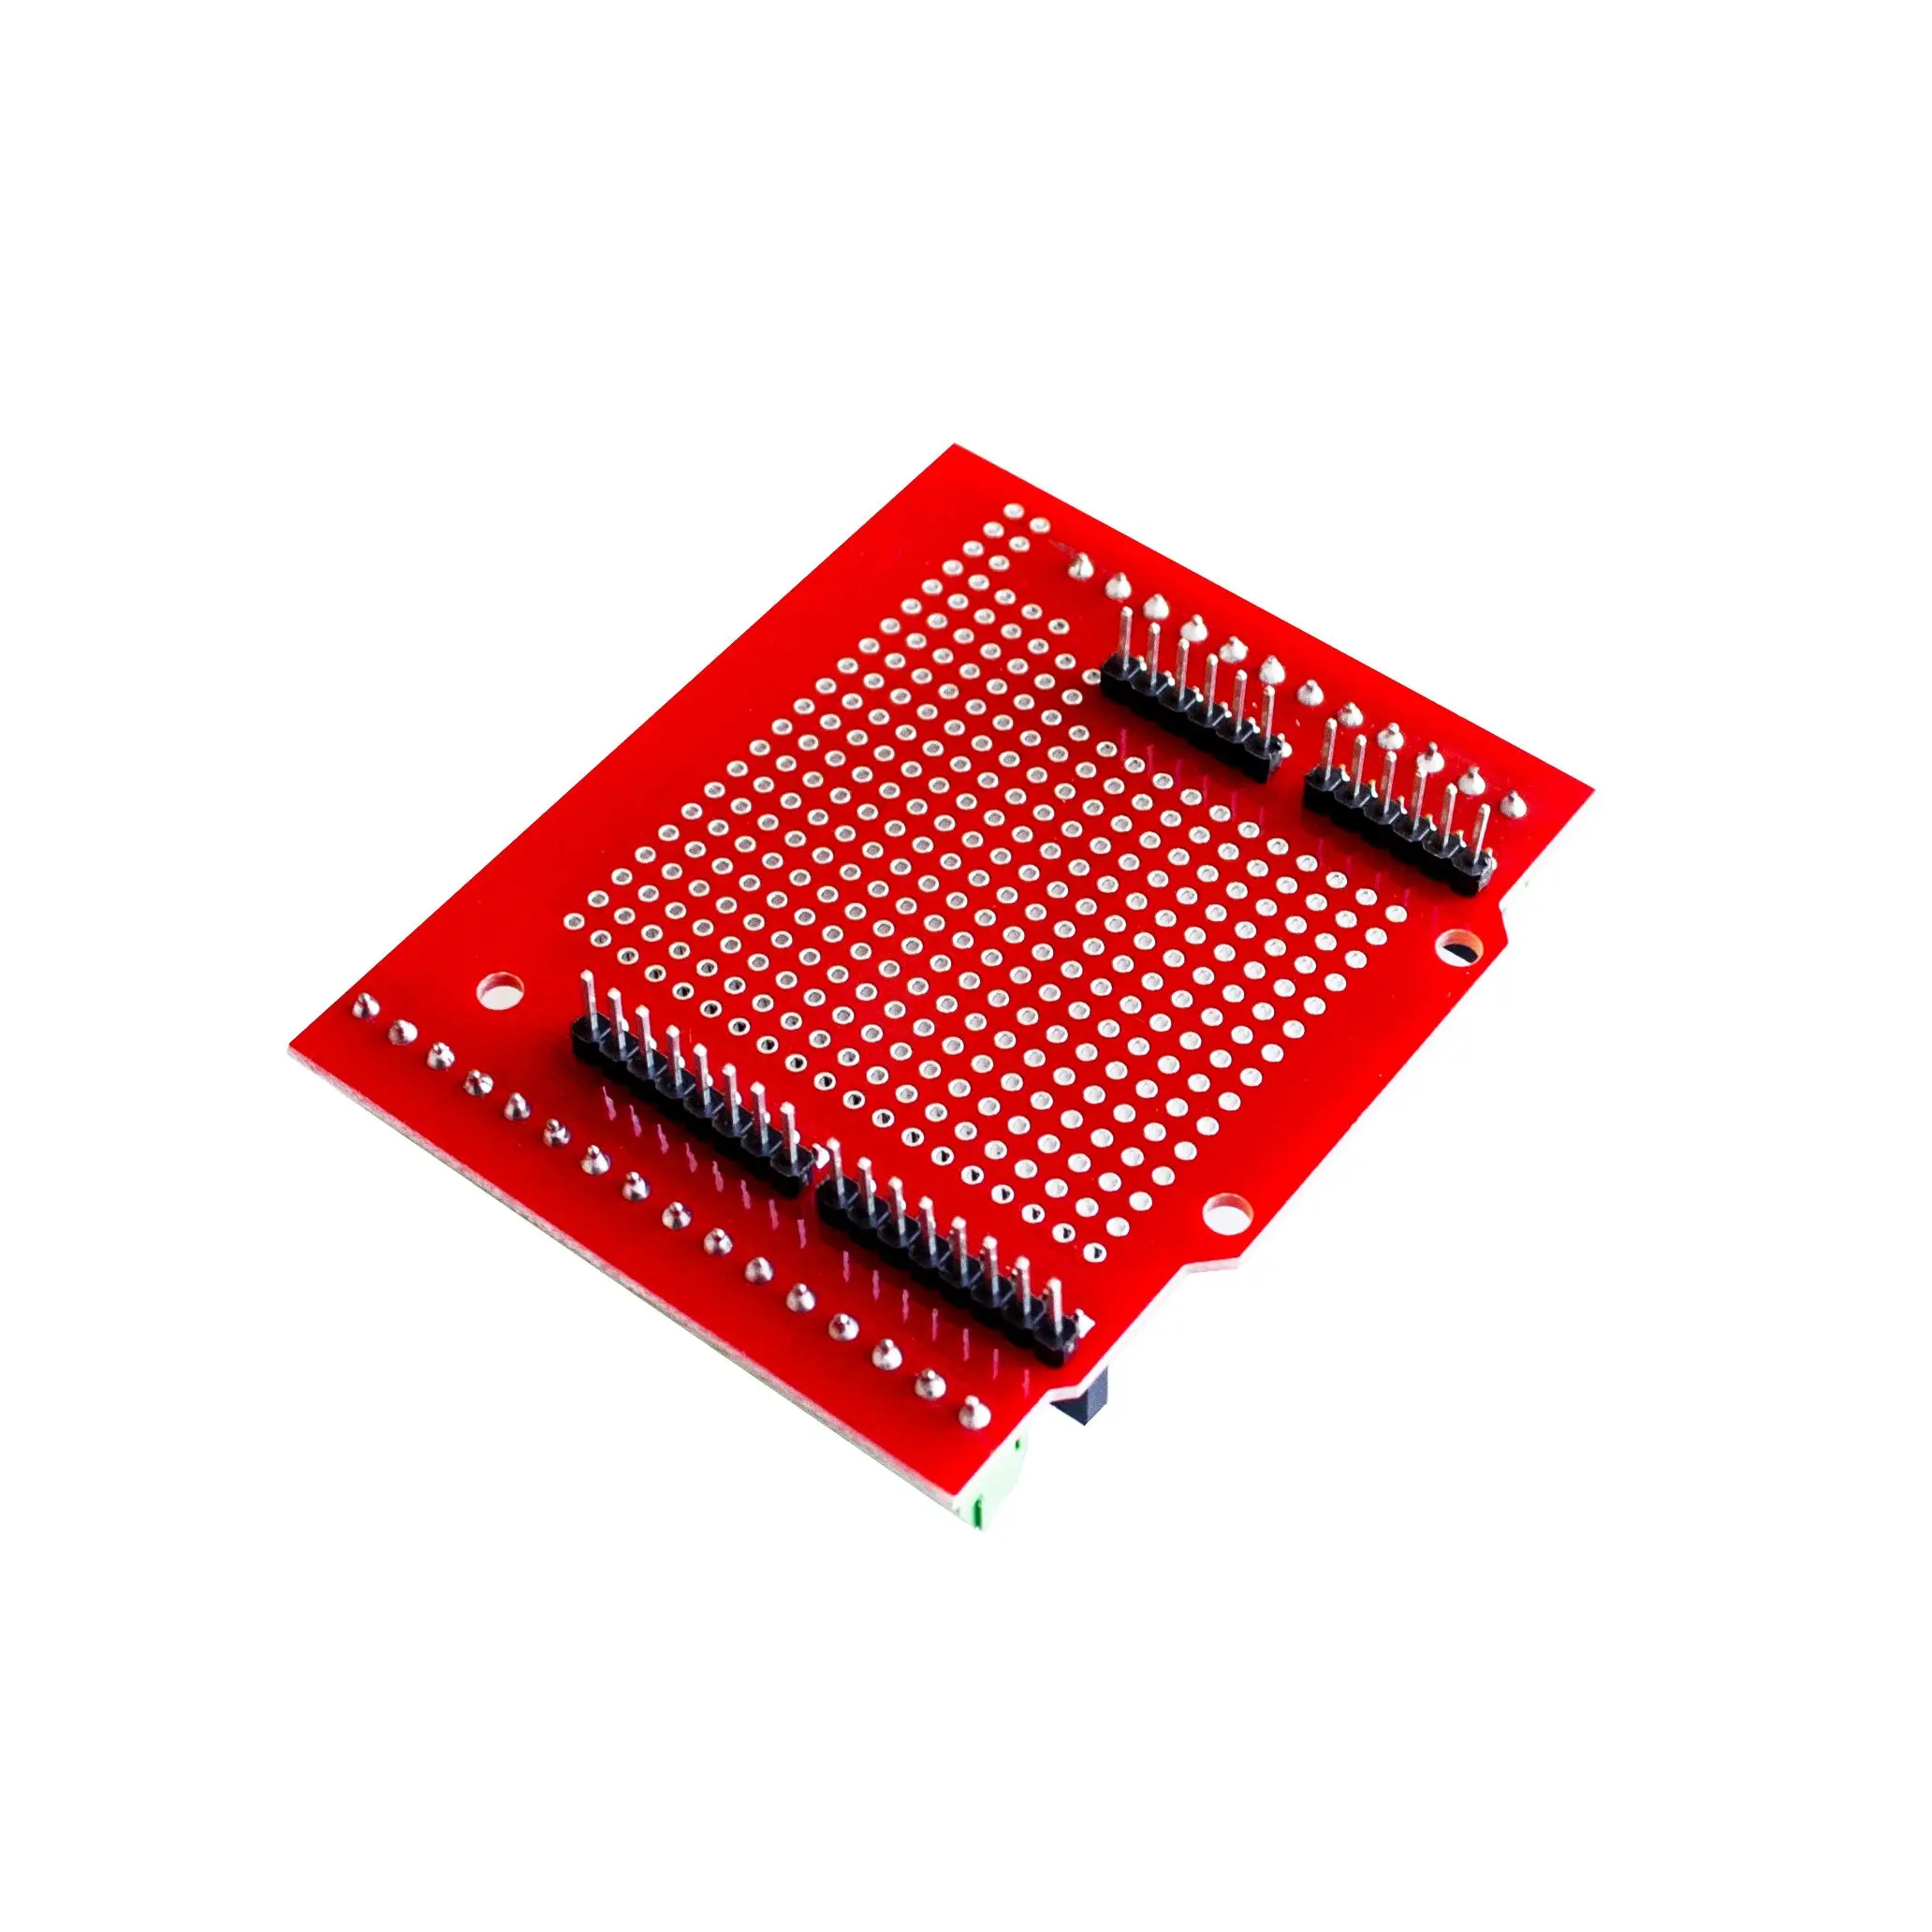 Proto винт щит для Arduino с открытым исходным кодом Кнопка сброса D13 светодиодный для макетной платы 3,81 терминал Двухсторонний PCB SMT припой DIY